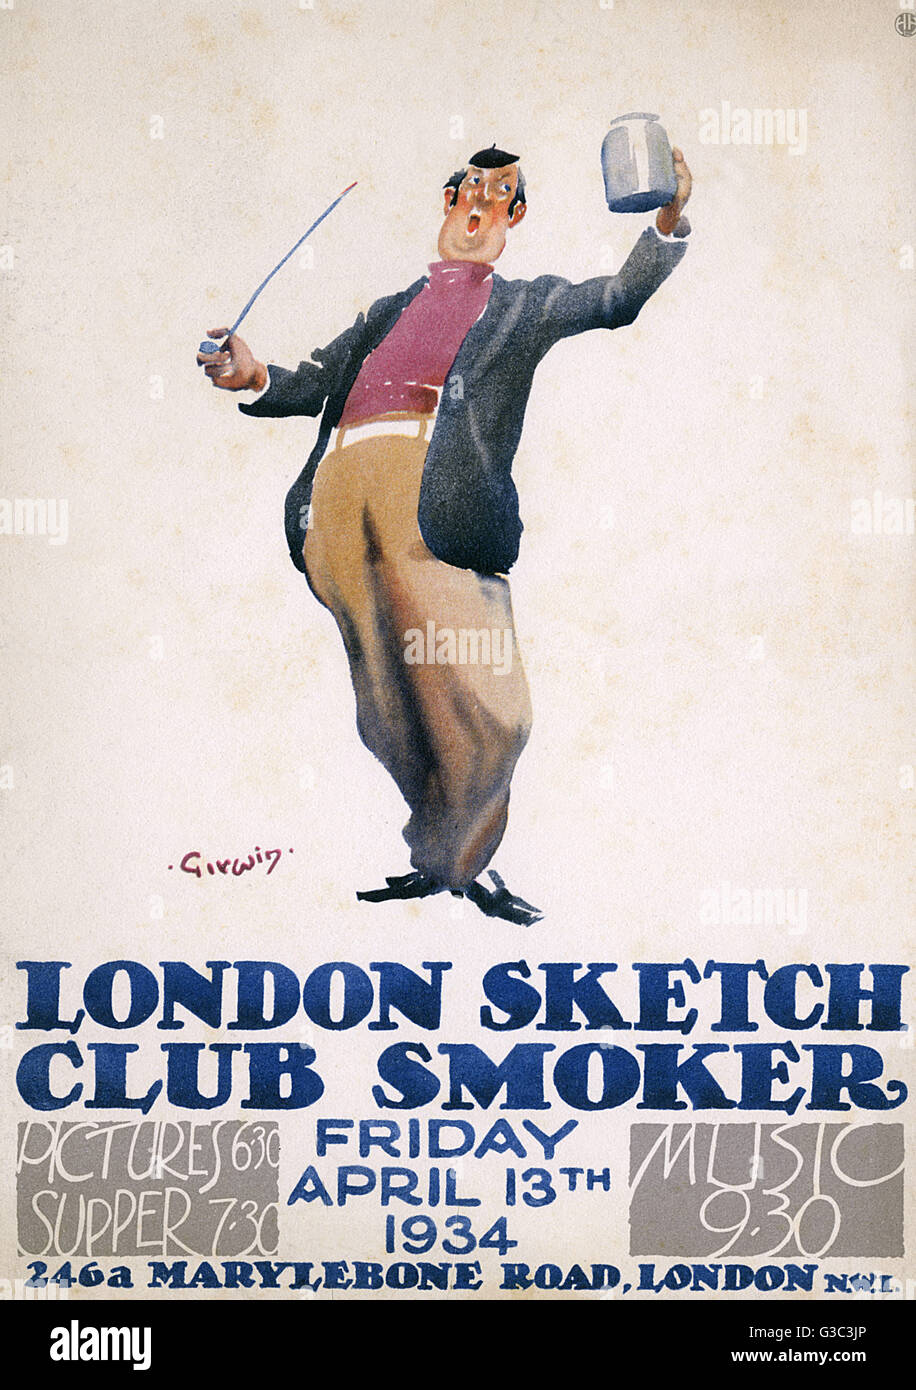 Broschüre Werbung London Skizze Club Raucher (Rauchen Partei), am Freitag, 13. April 1934 an einem Veranstaltungsort in Marylebone Road, London NW1, mit Bildern von 6.30 Uhr, Abendessen ab 7.30 Uhr und Musik von 9.30 Uhr stattfindet.      Datum: 1934 Stockfoto